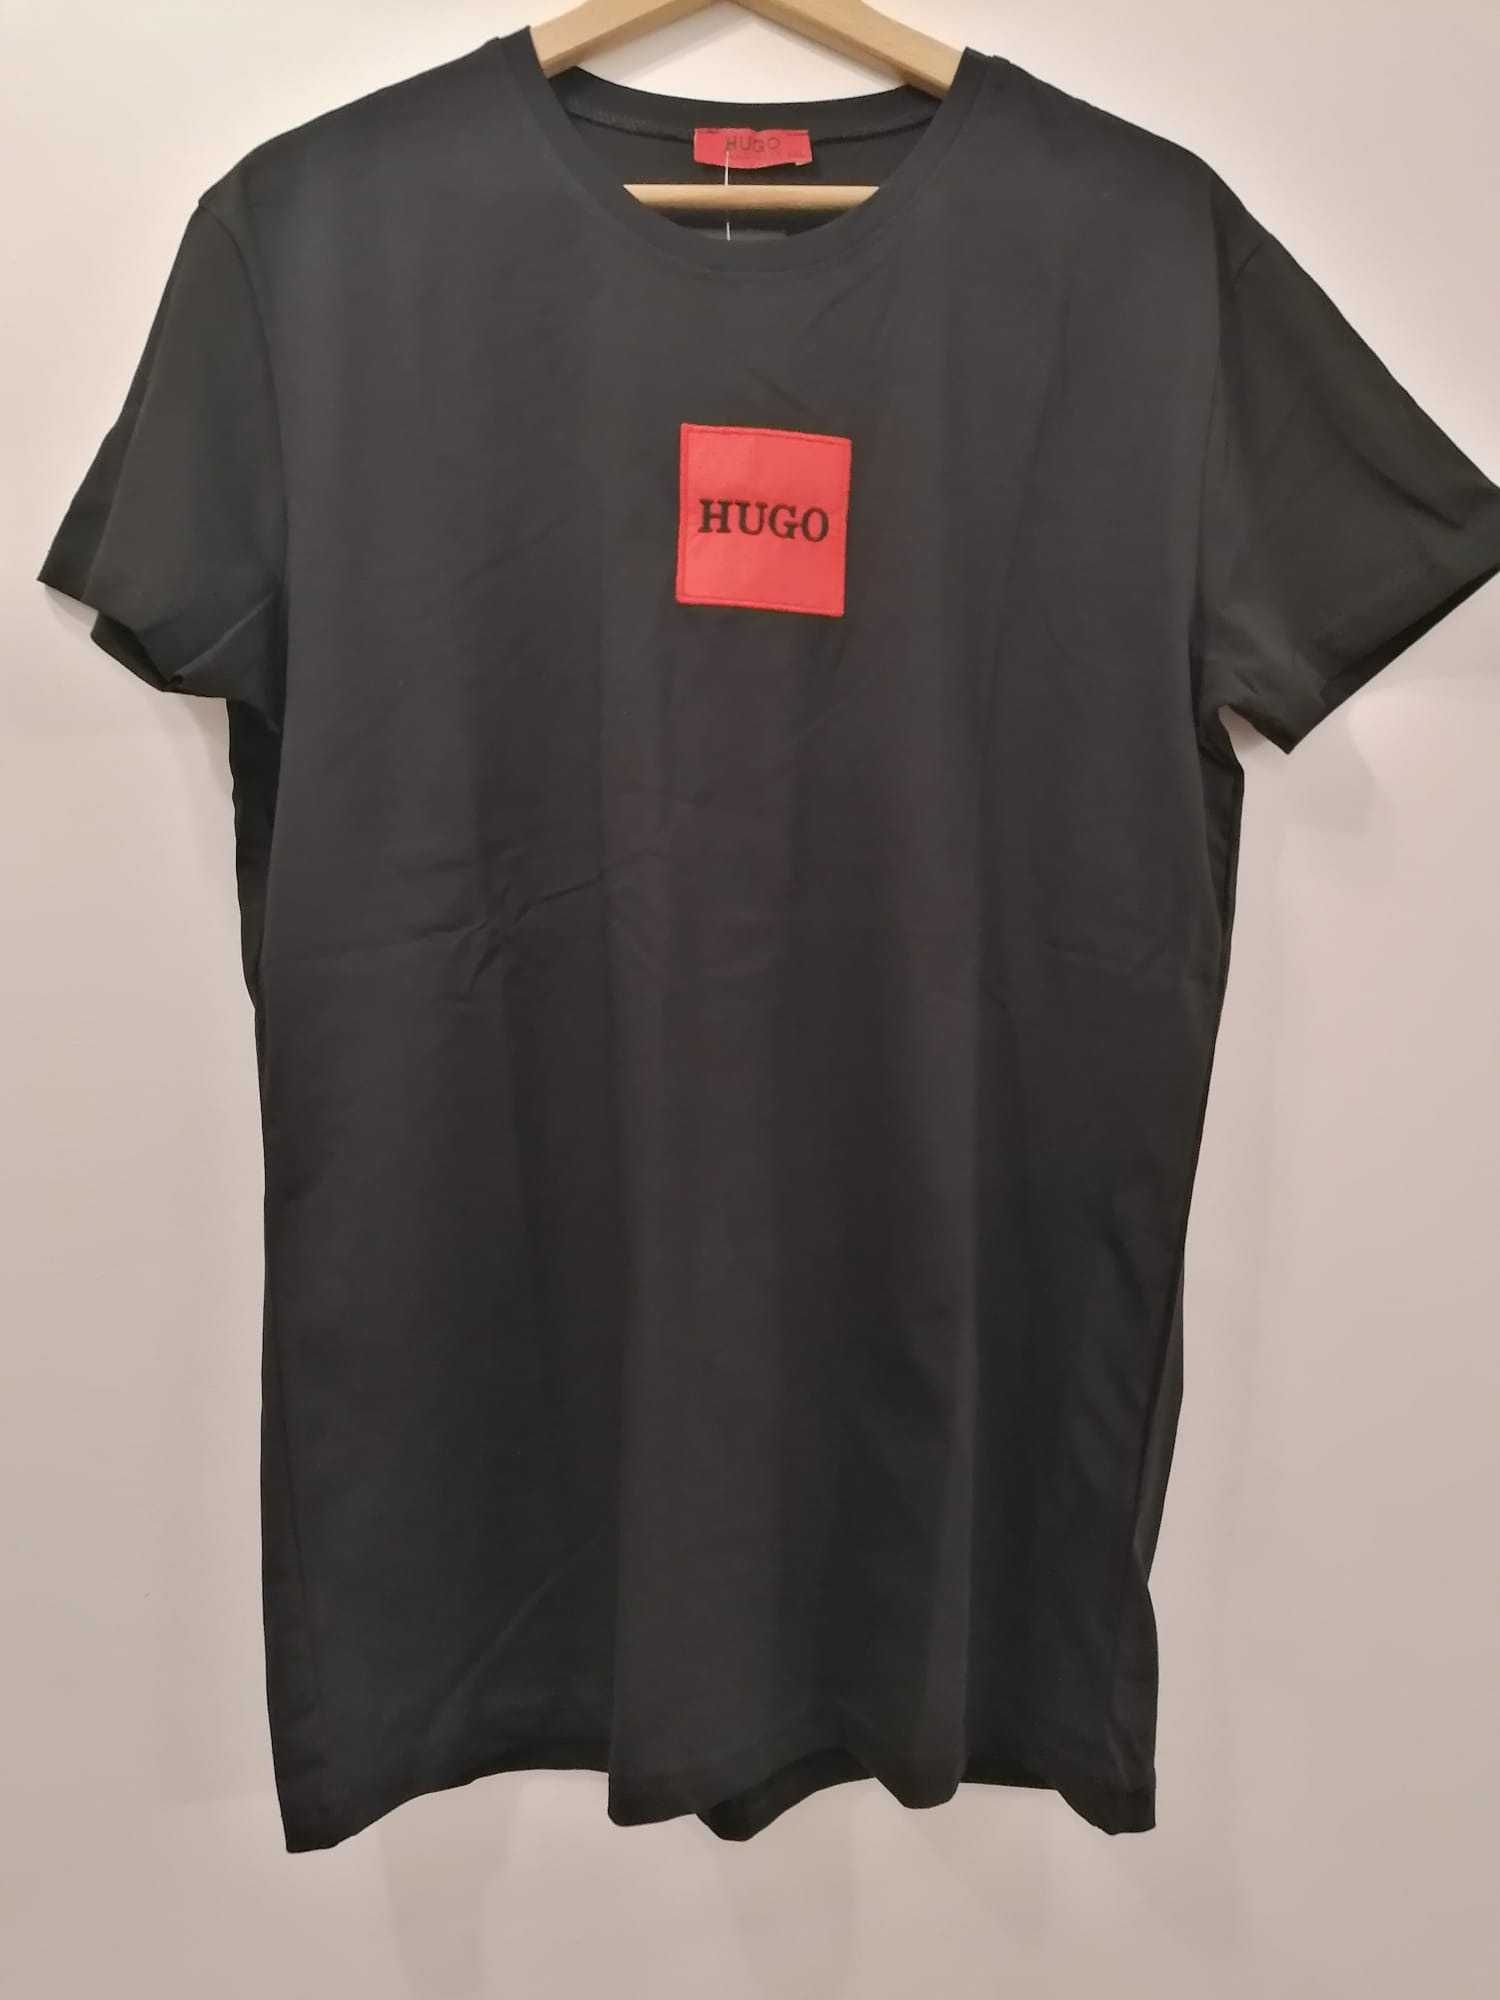 Tricou Hugo Boss, Imprimeu Cusut, Calitate Premium, Alb sau Negru